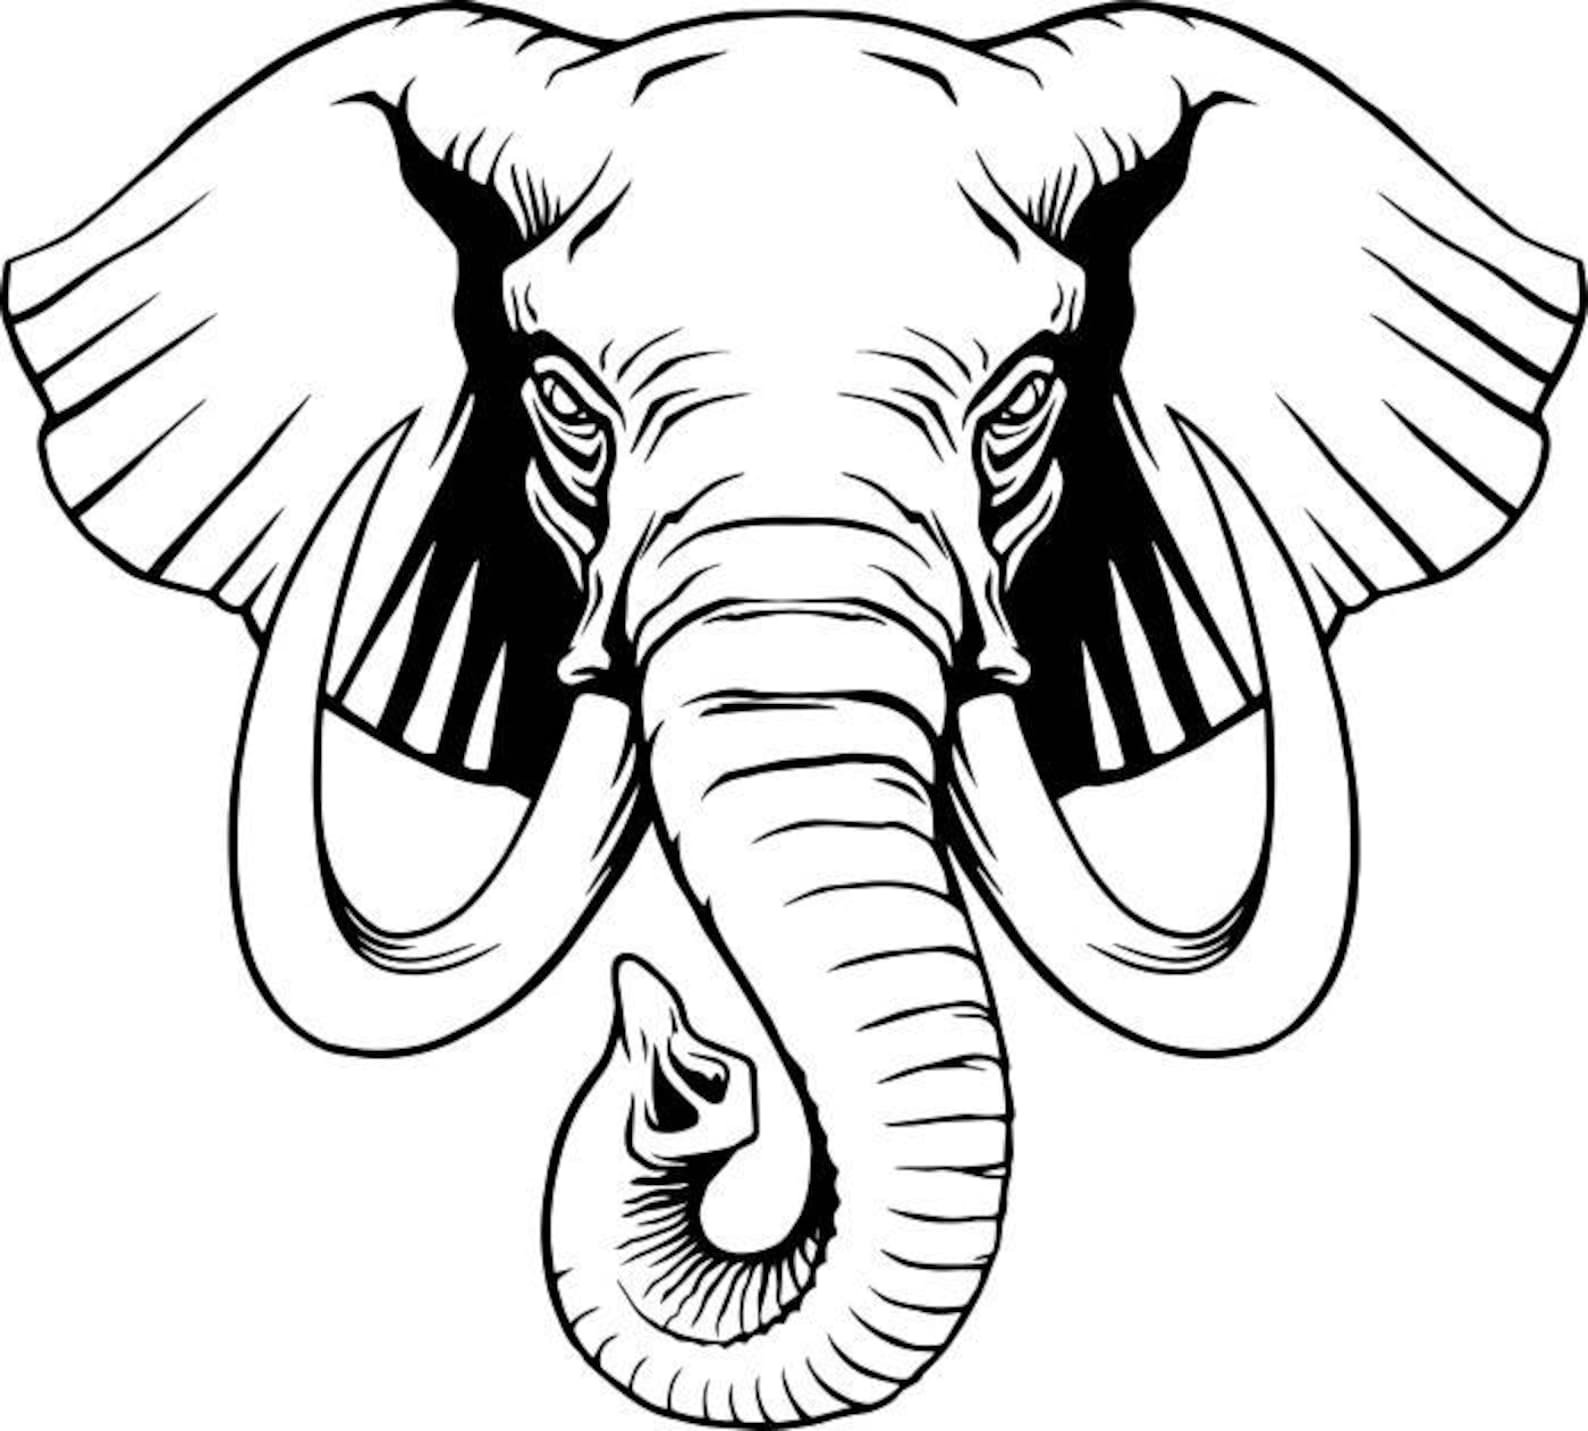 Контур головы слона